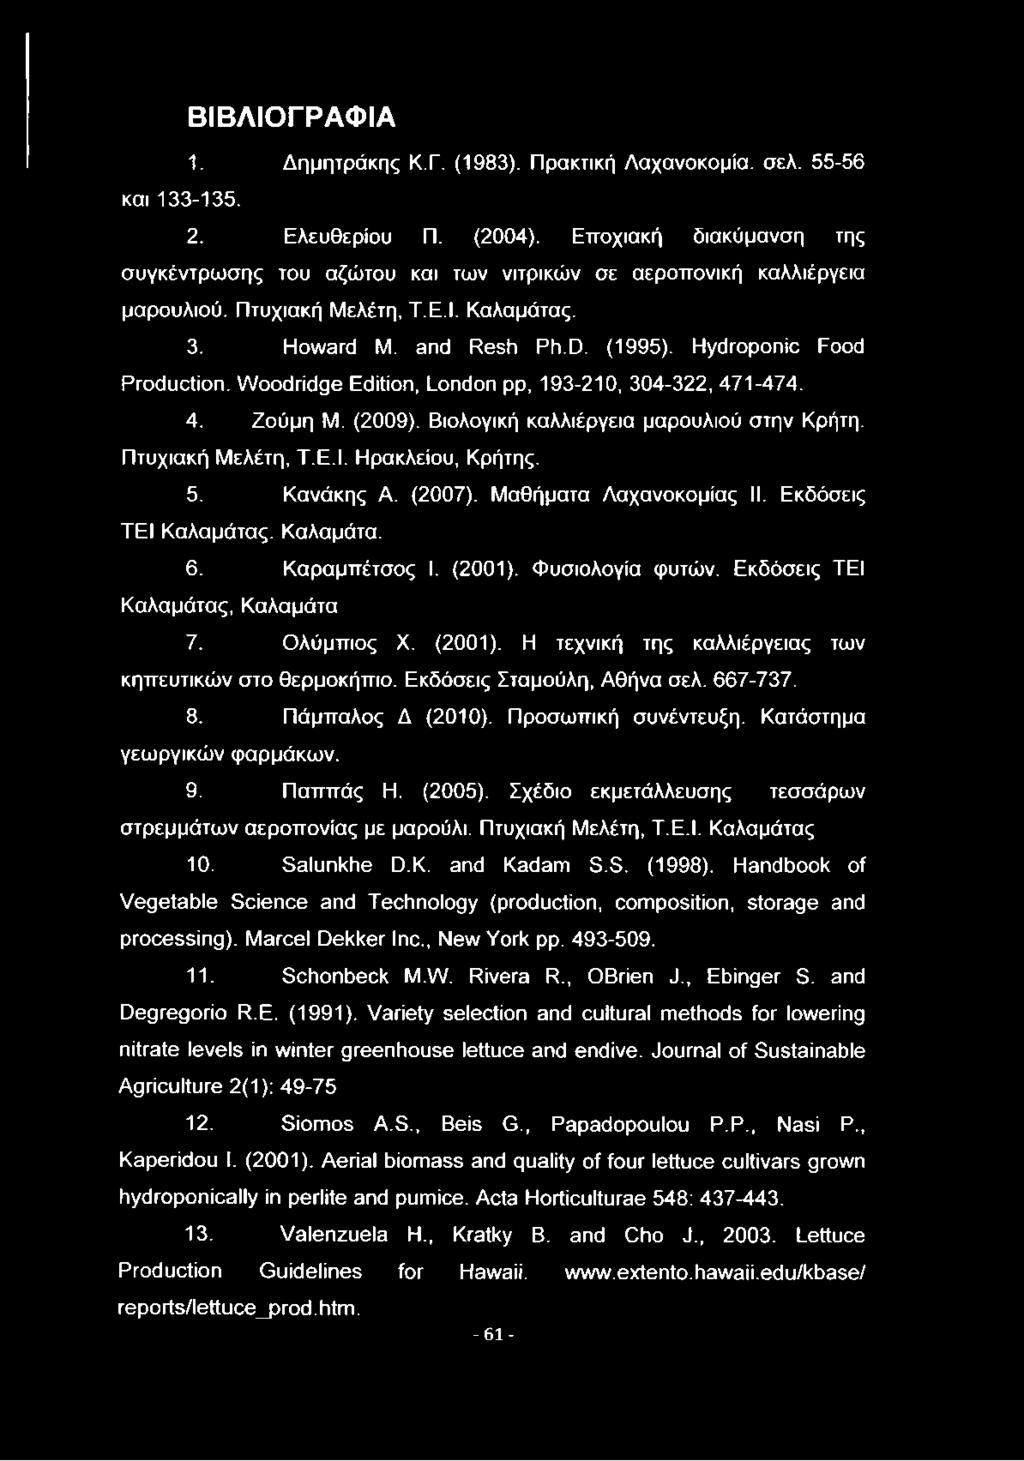 Woodridge Edition, London pp, 193-210, 304-322, 471-474. 4. Ζούμη M. (2009). Βιολογική καλλιέργεια μαρουλιού στην Κρήτη. Πτυχιακή Μελέτη, Τ.Ε.Ι. Ηρακλείου, Κρήτης. 5. Κανάκης Α. (2007).